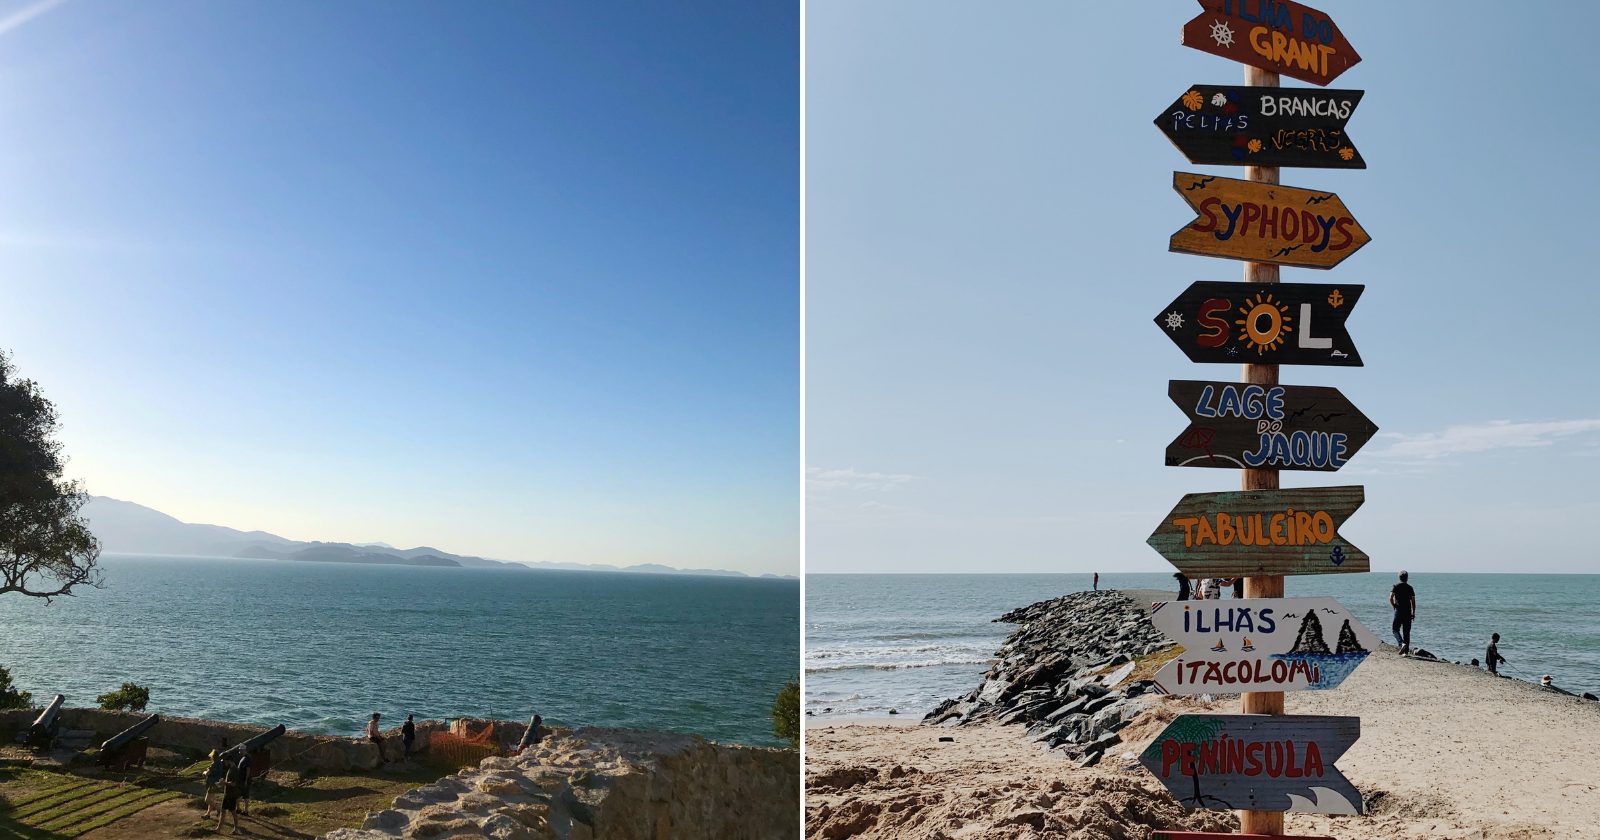 22 praias em Santa Catarina para relaxar e aproveitar as melhores do estado (Imagens: Unsplash)